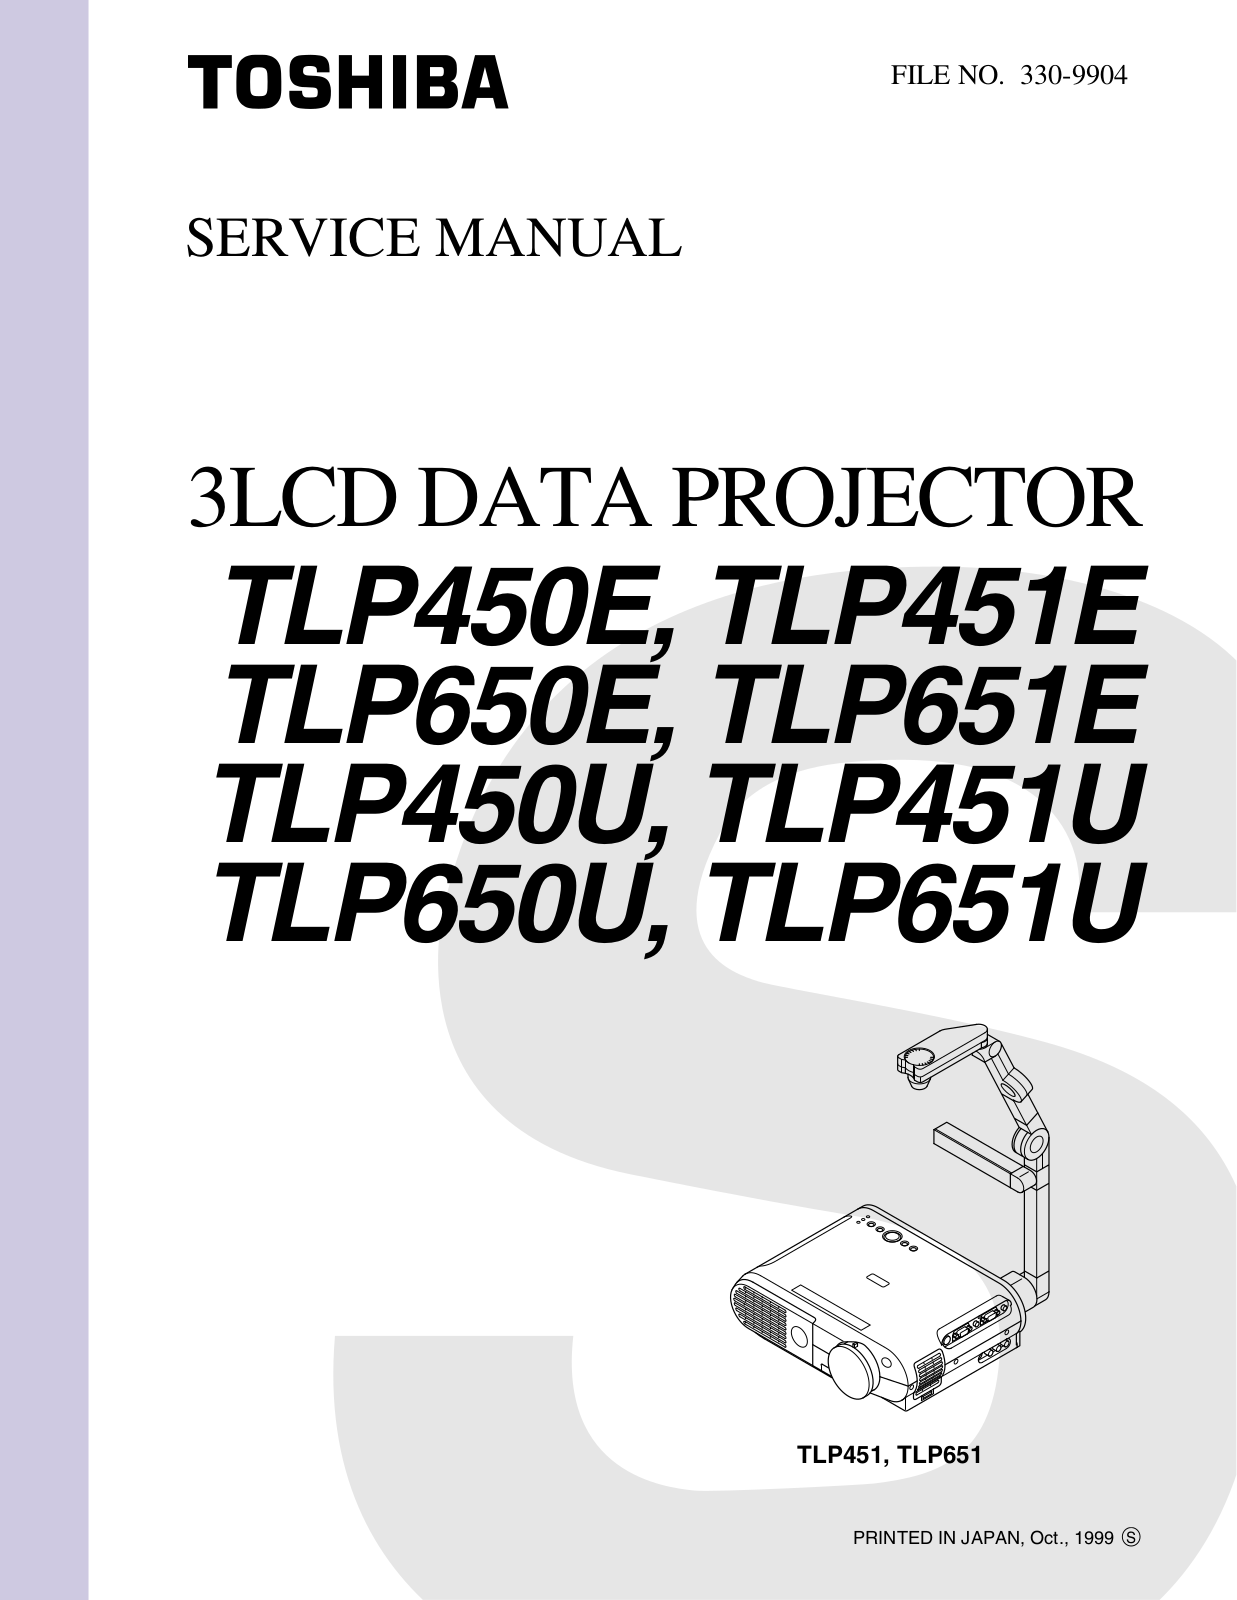 Toshiba TLP450, TLP451, TLP650, TLP651 Schematic